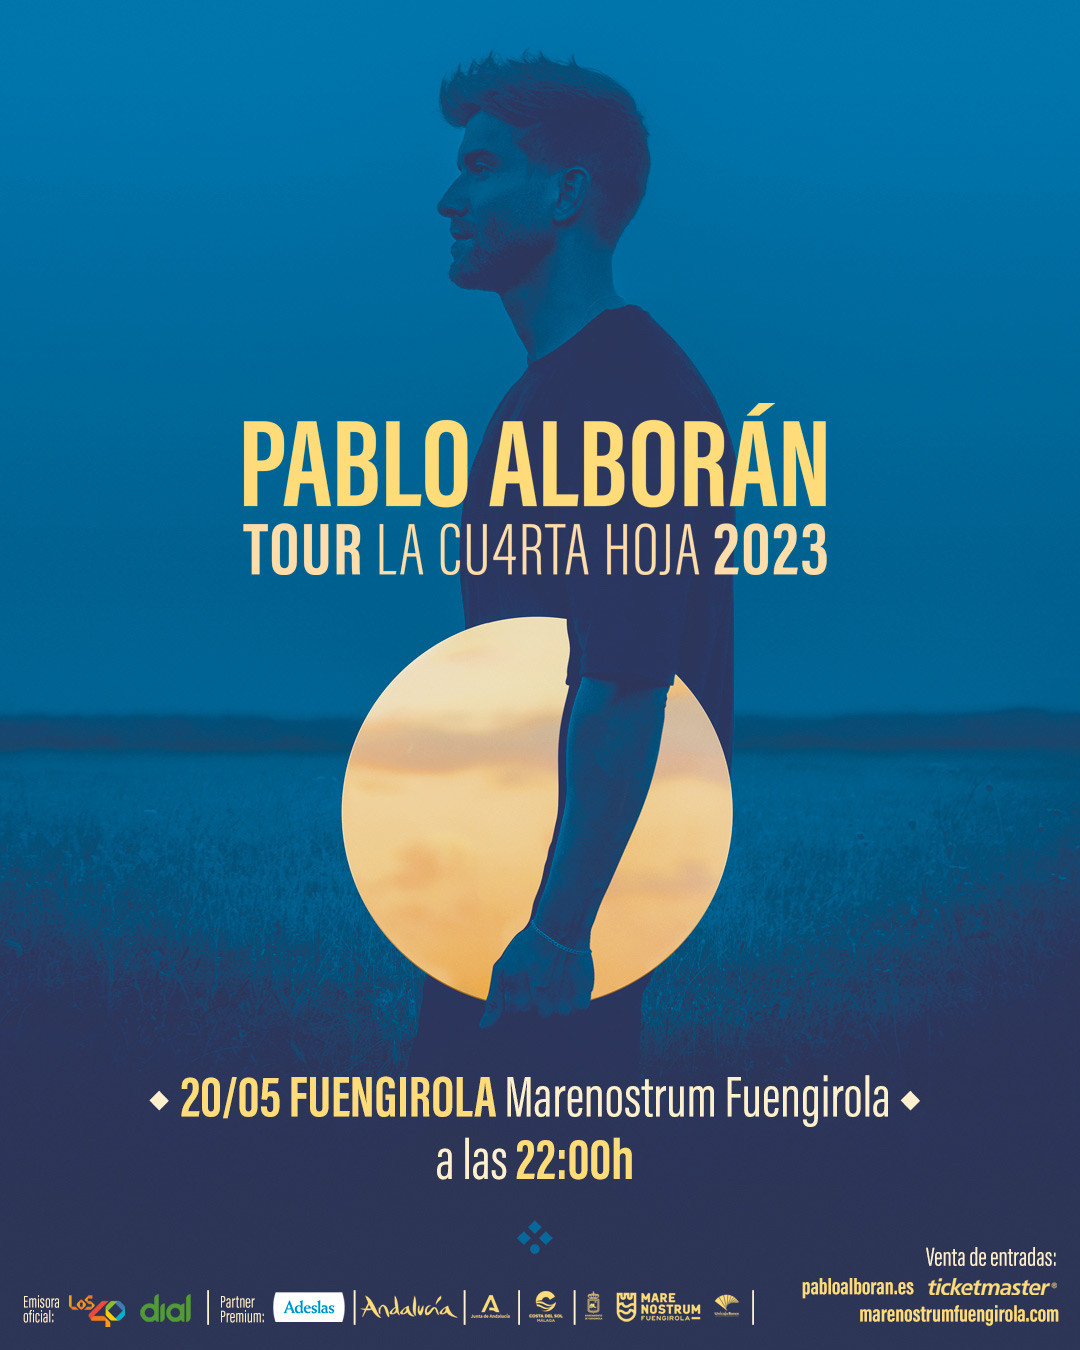 PABLO ALBORAN - TOUR LA CU4RTA HOJA 2023 - Marenostrum Fuengirola